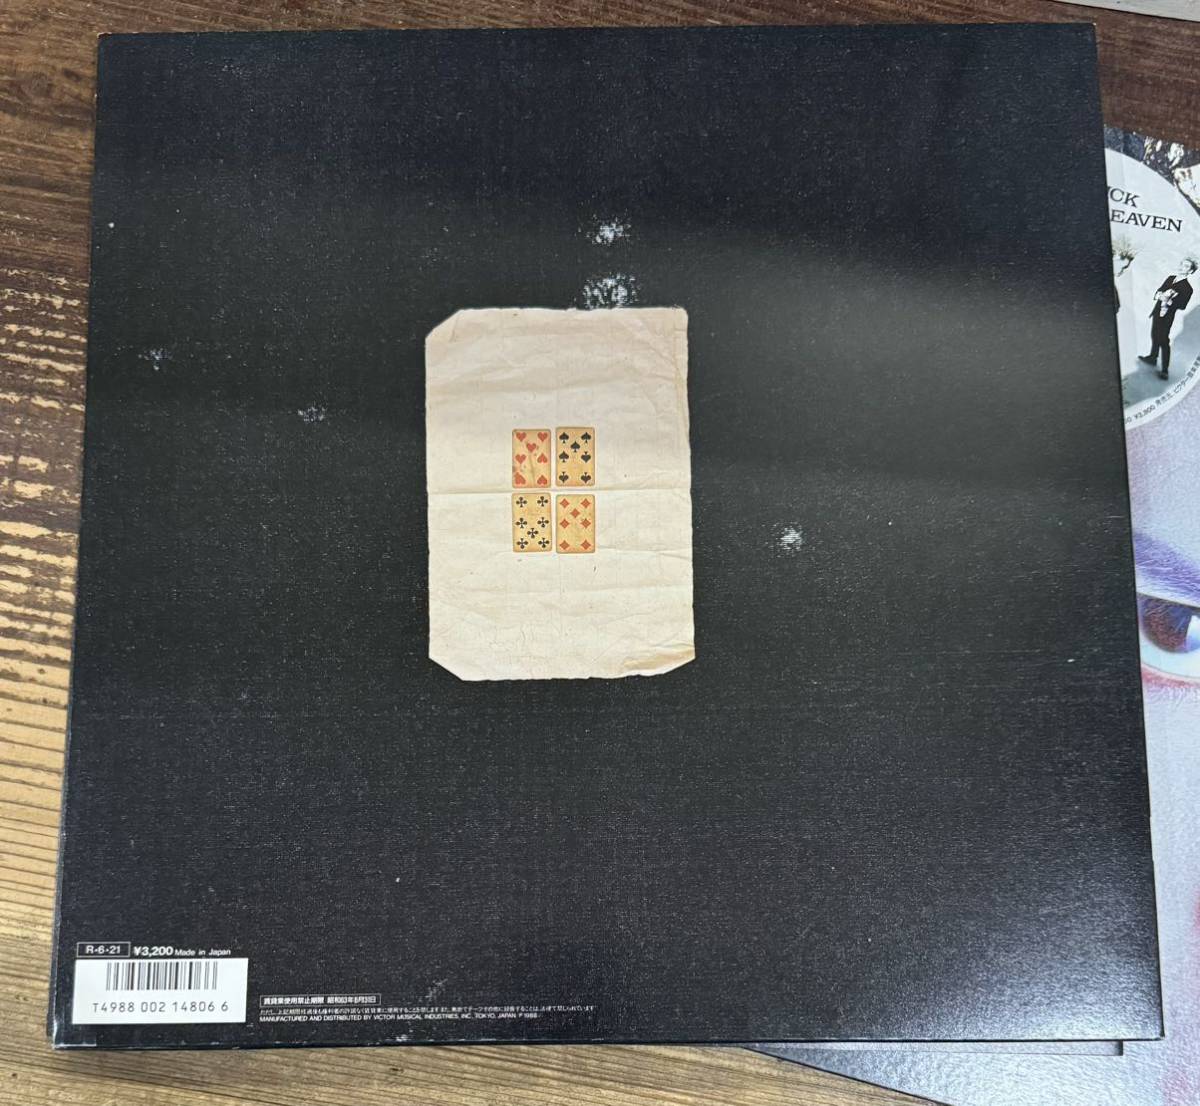  rare record LP record BT1]BUCK-TICKbakchik#SEVENTH HEAVEN# Sakurai .. now ..# inspection ) SOFT BALLET SCHAFT AA=